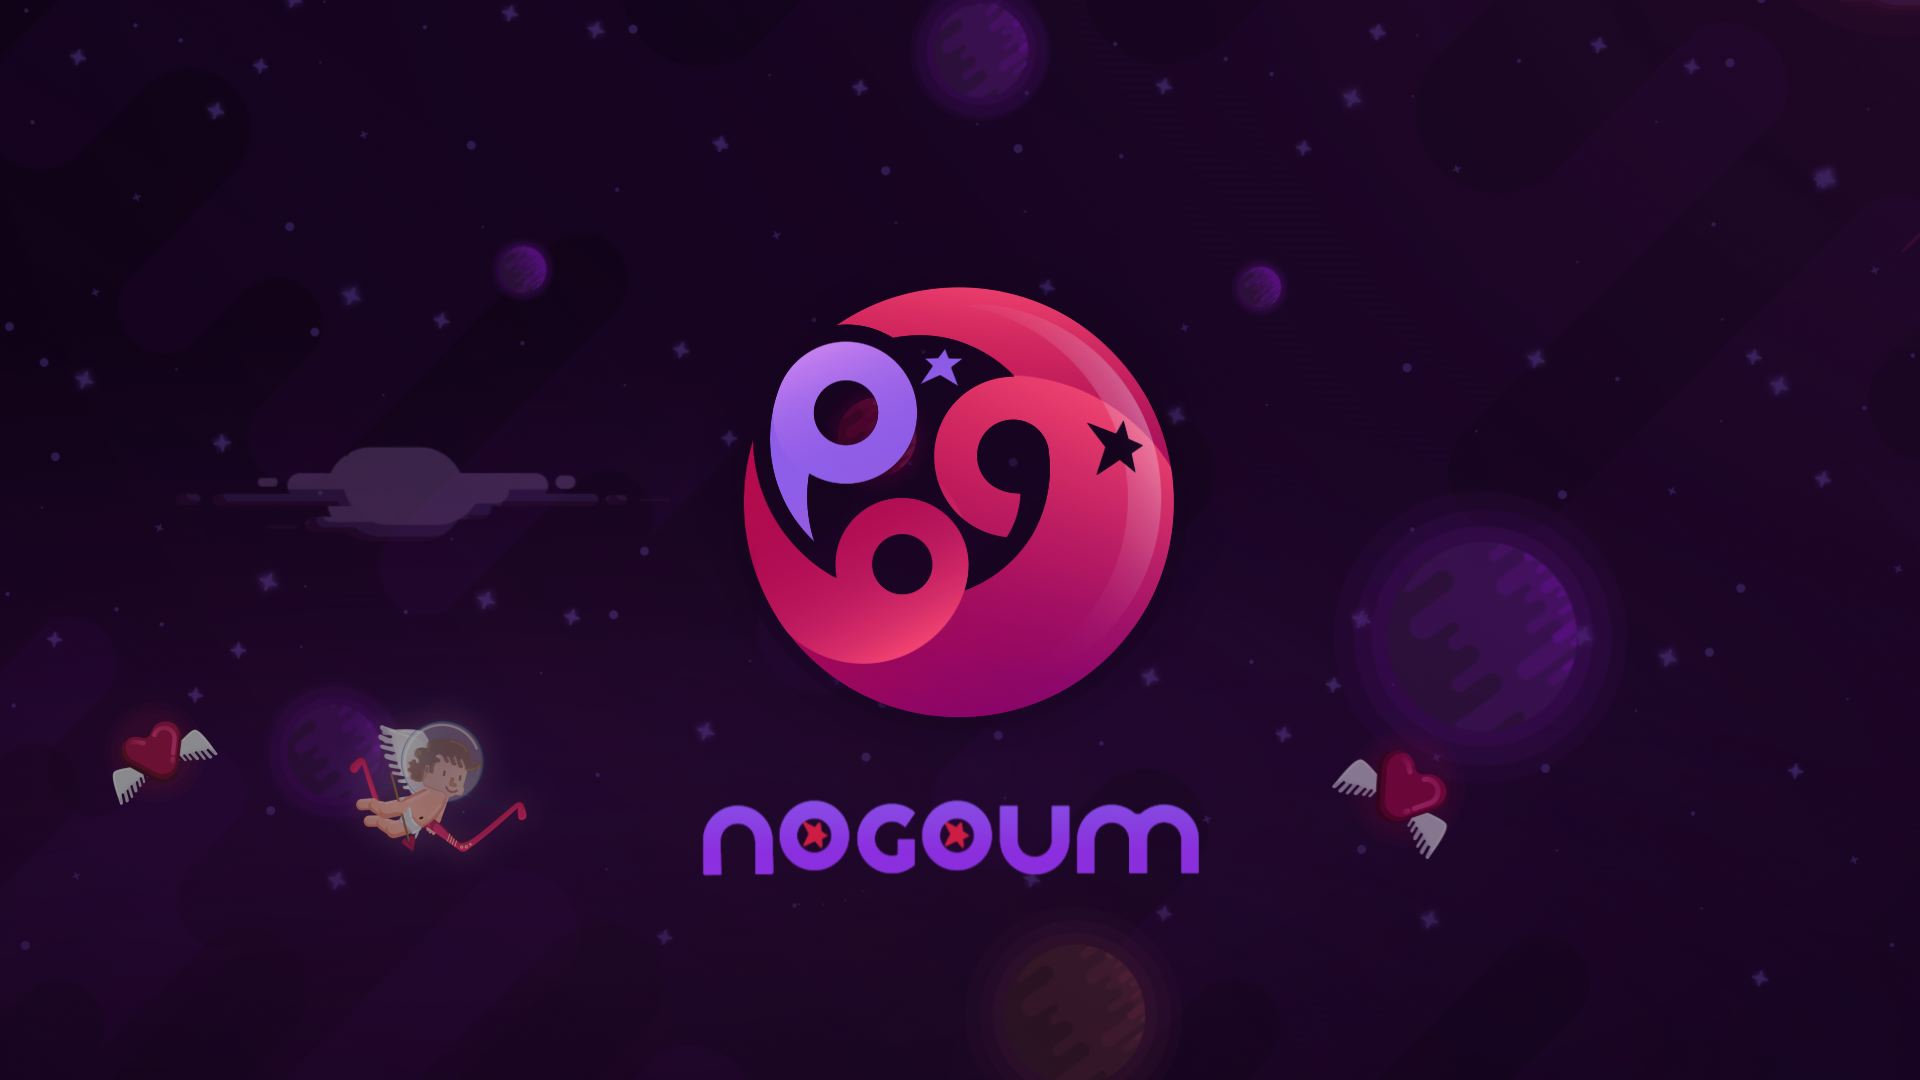 Nogoum FM Branding